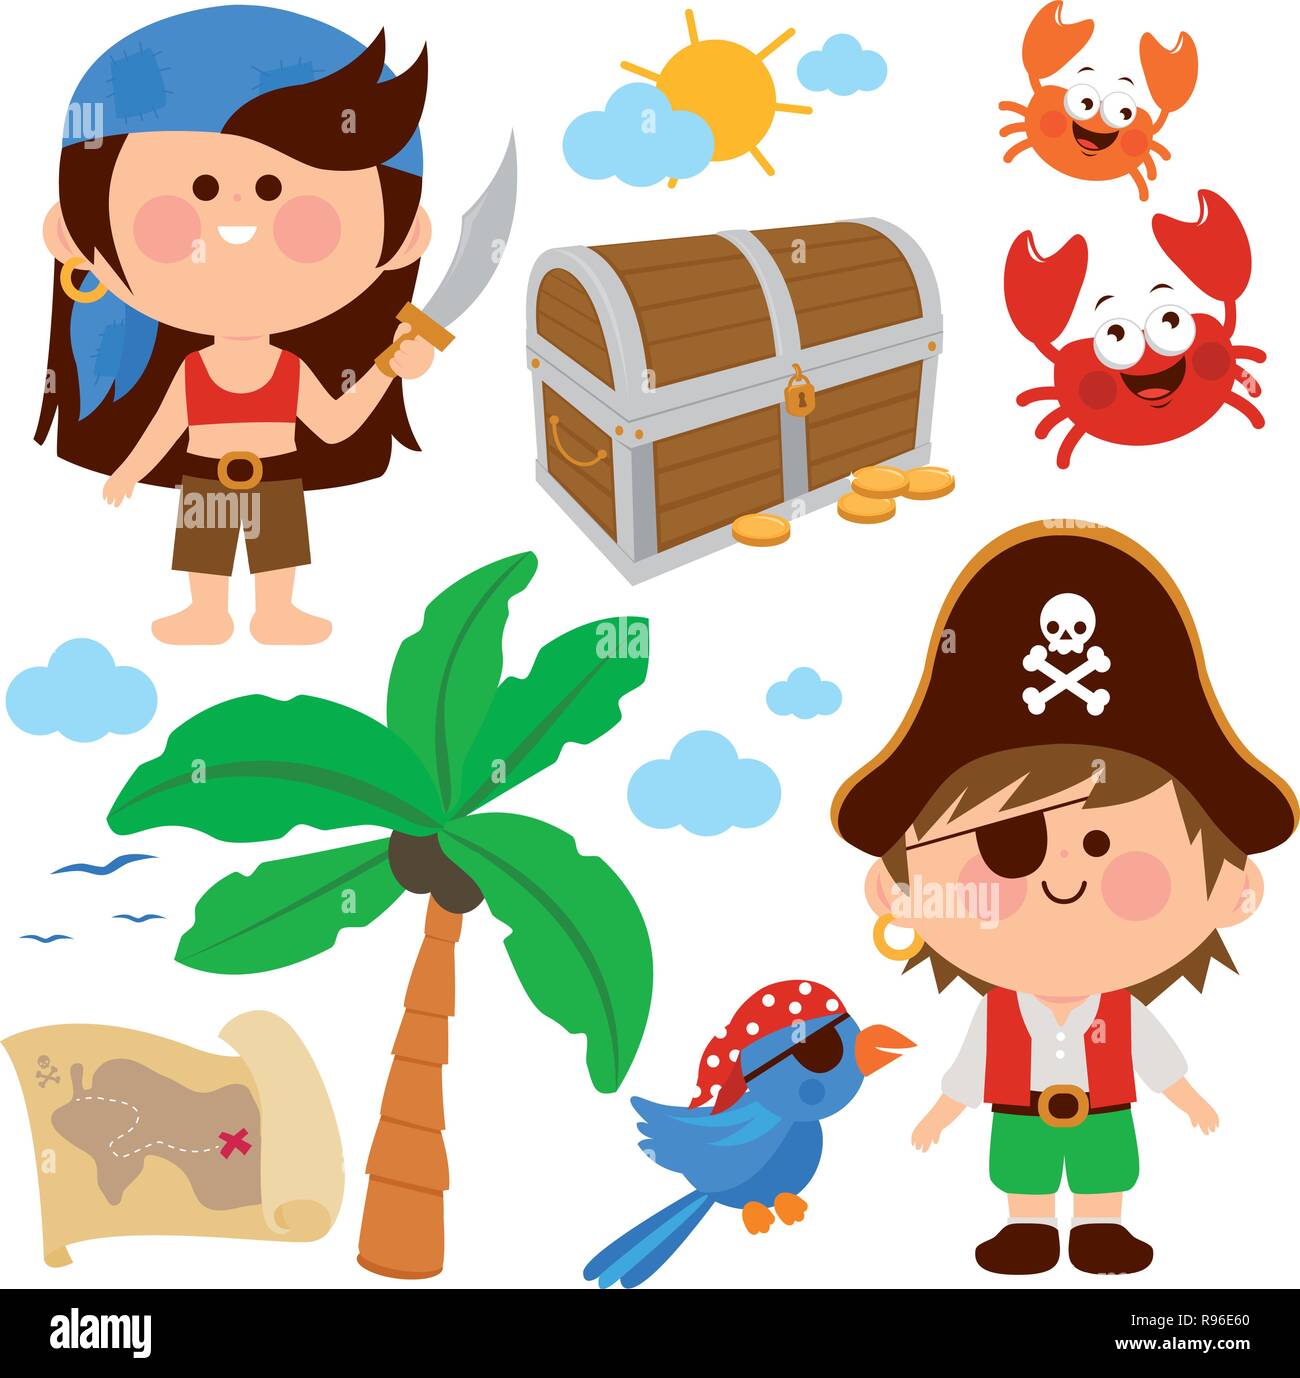 10,517 imágenes, fotos de stock, objetos en 3D y vectores sobre Niño vestido  de pirata